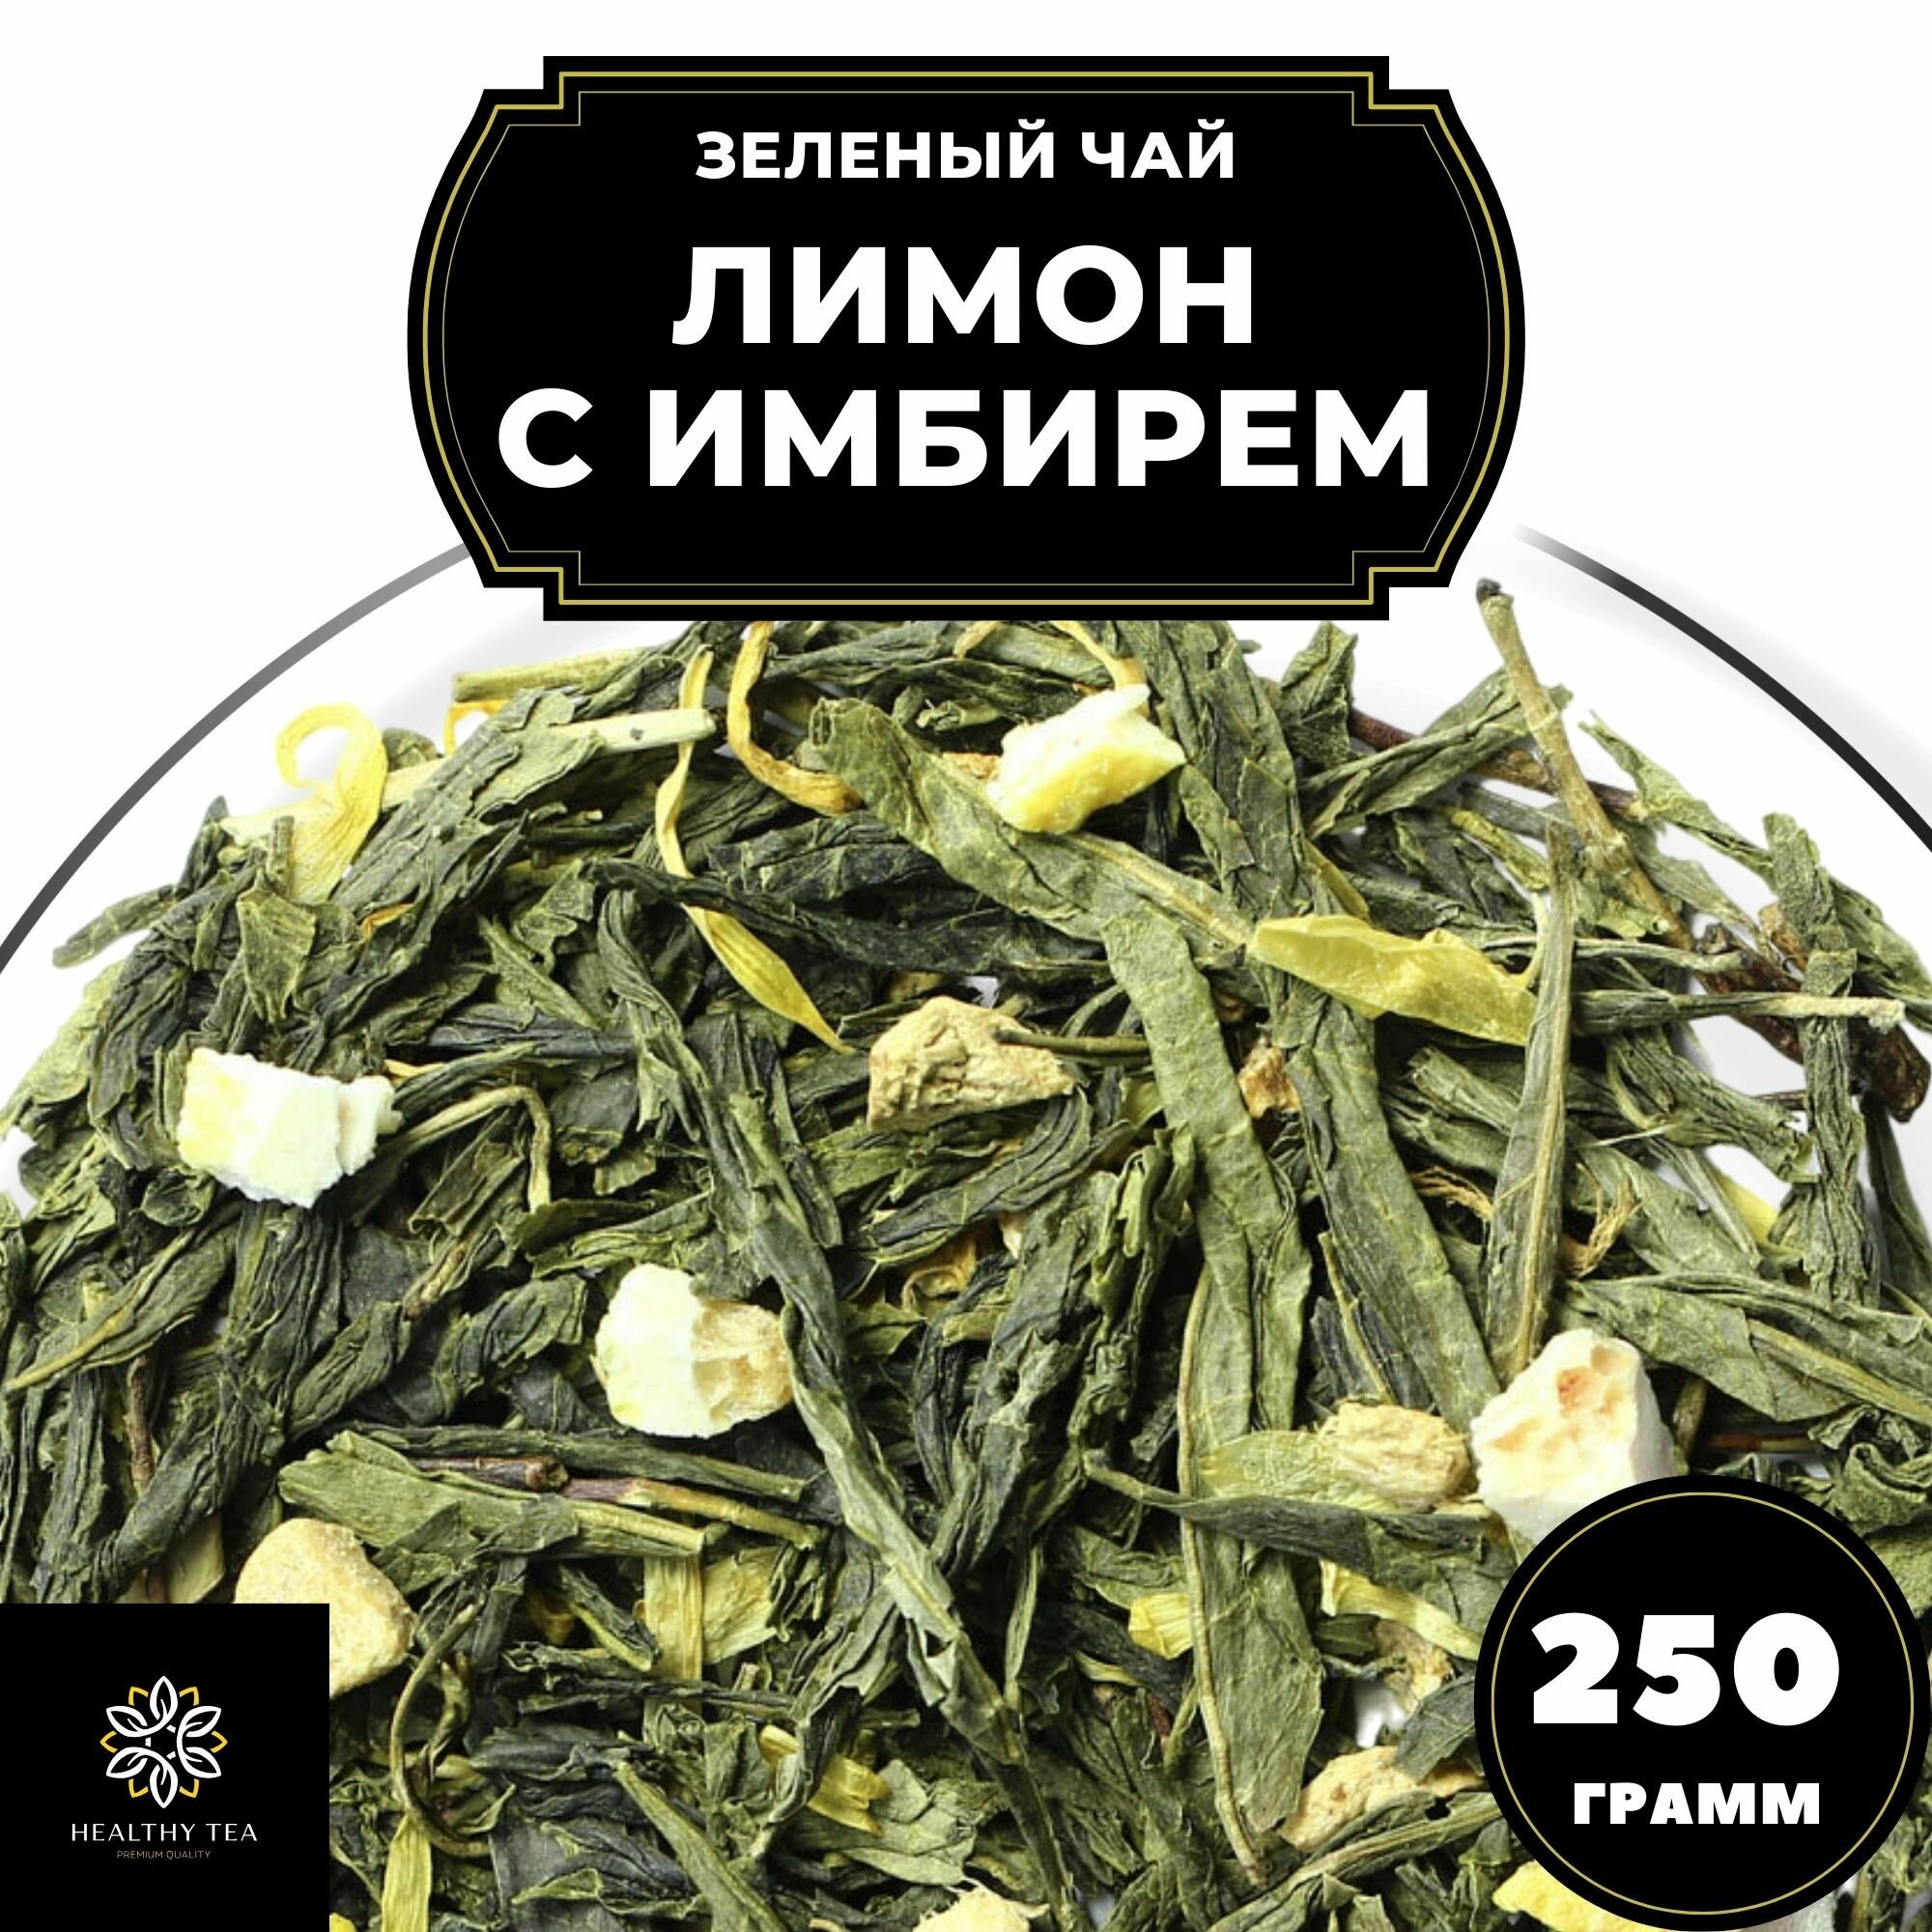 Китайский Зеленый чай с имбирем, лимоном и календулой Лимон с имбирем Полезный чай / HEALTHY TEA, 250 г